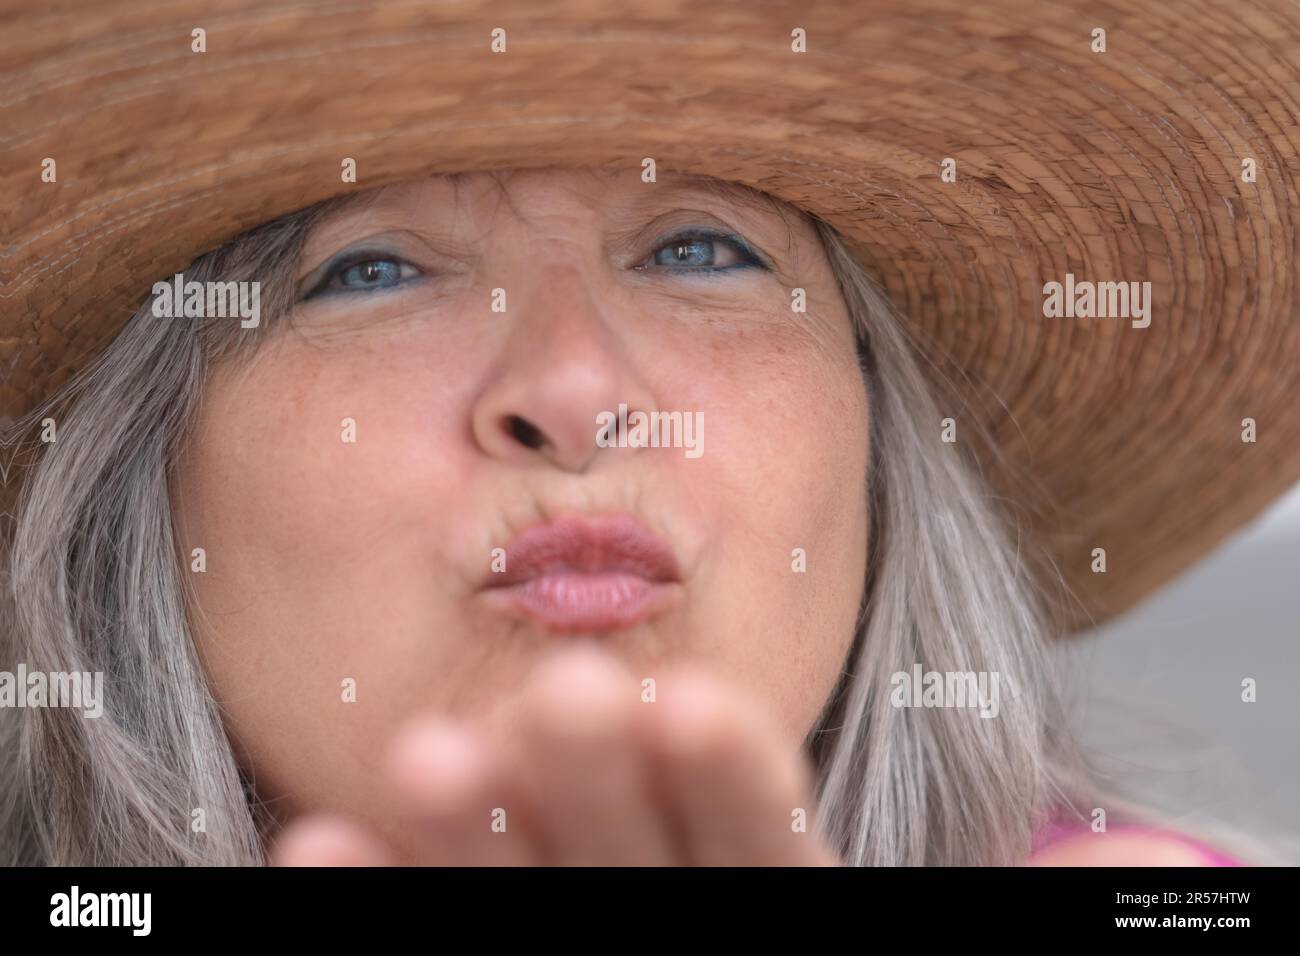 Nahaufnahme einer älteren Frau mit Hut, weißem Haar, blauen Augen und Sommersprossen, die einen Kuss in die Kamera bläst Stockfoto